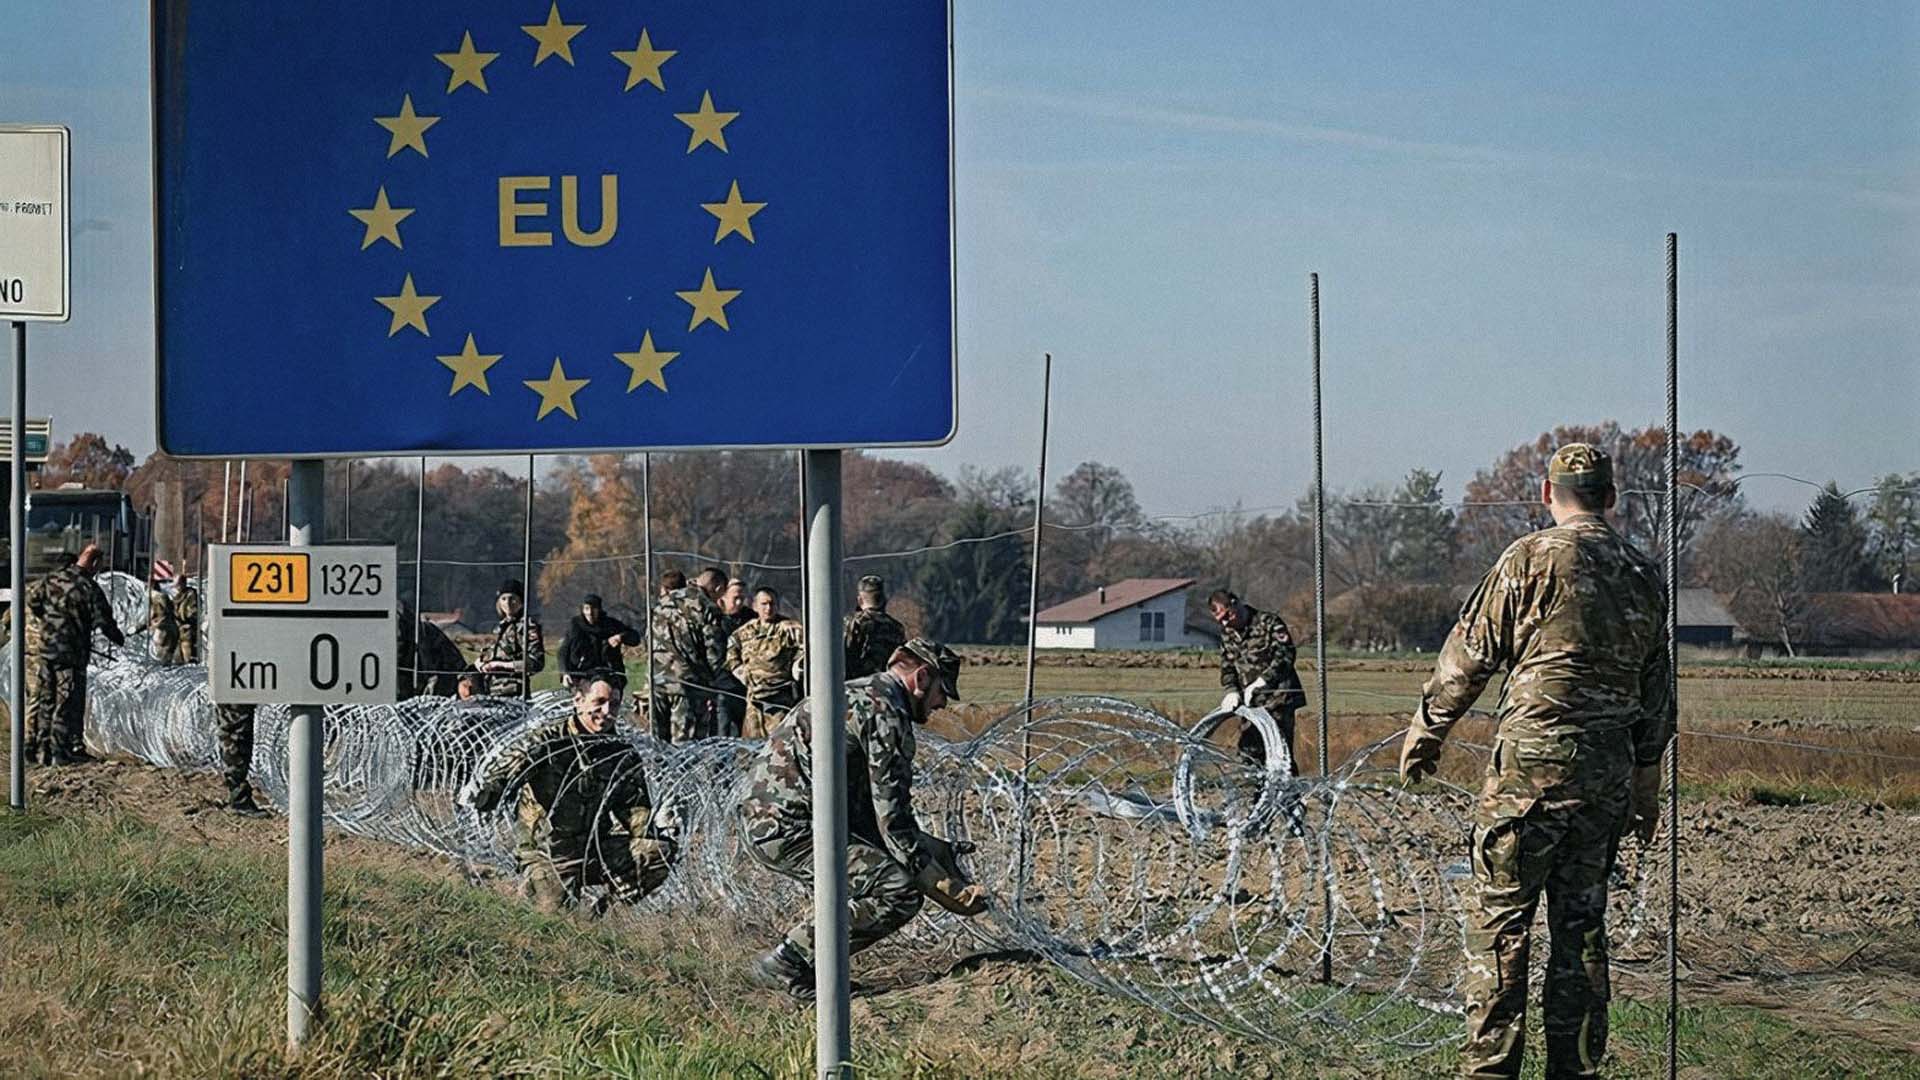 صورة أوروبا تعيد تدوير الجدران التي أسقطتها داخلها كأسوار حولها 